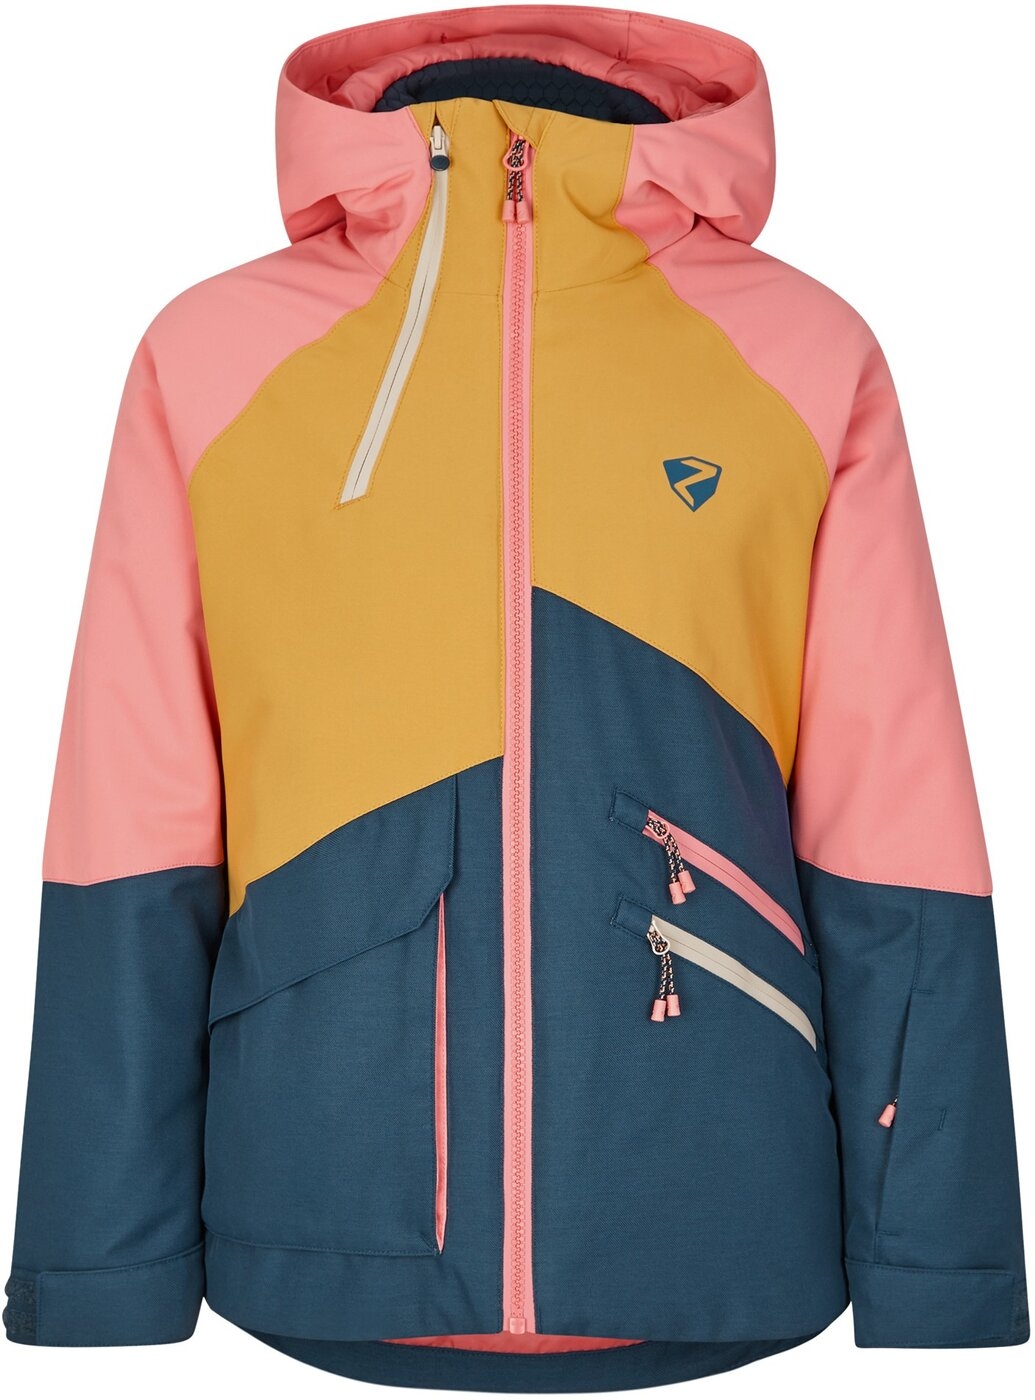 Ziener ARUMA jun (jacket ski) online kaufen